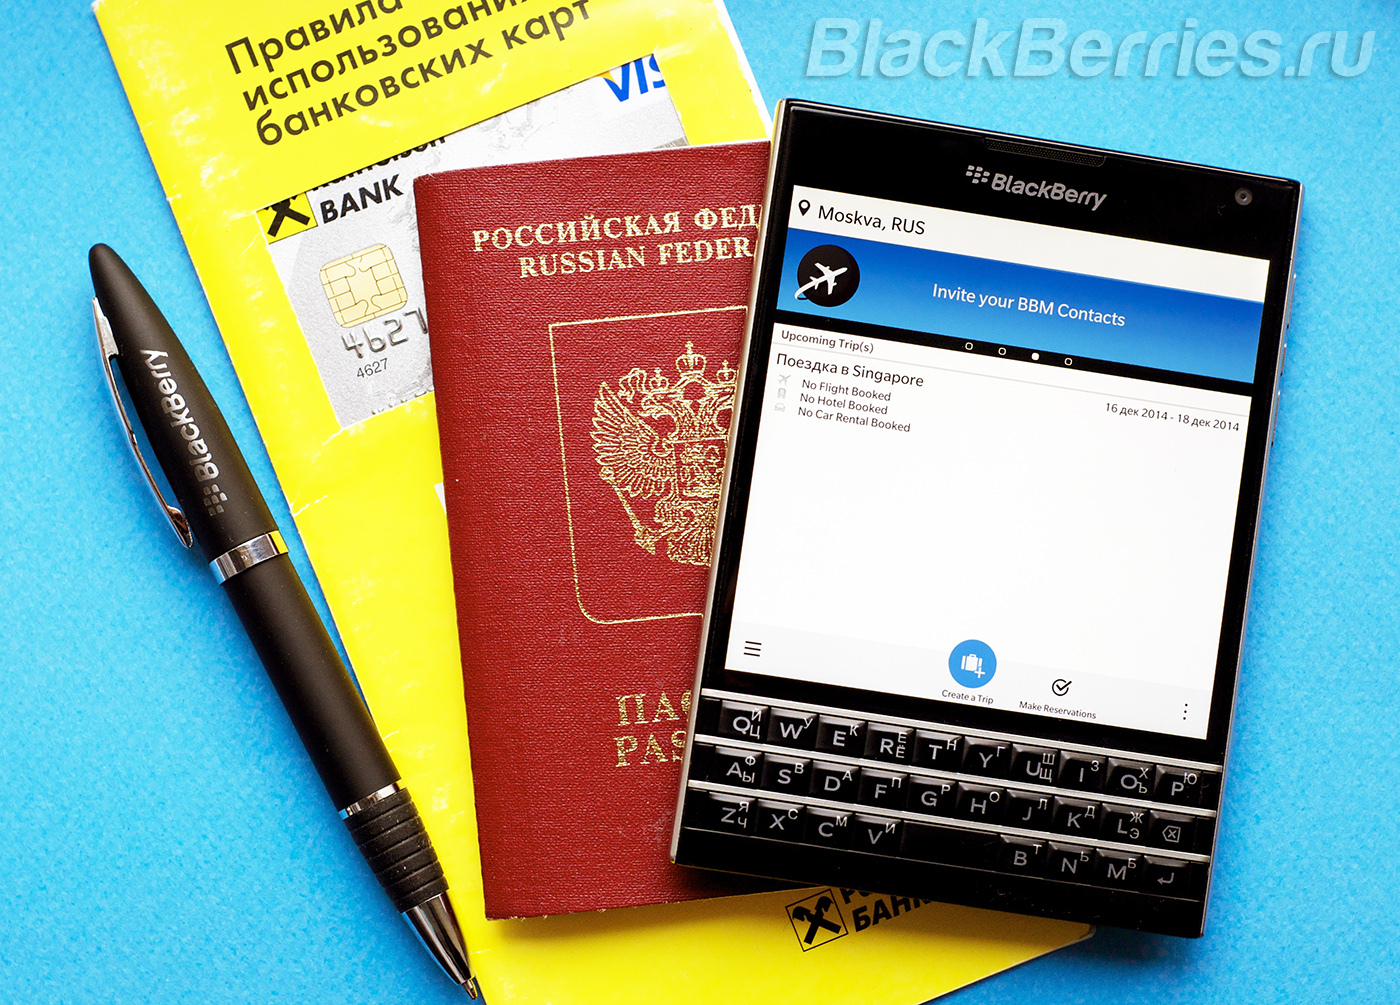 BlackBerry-Travel